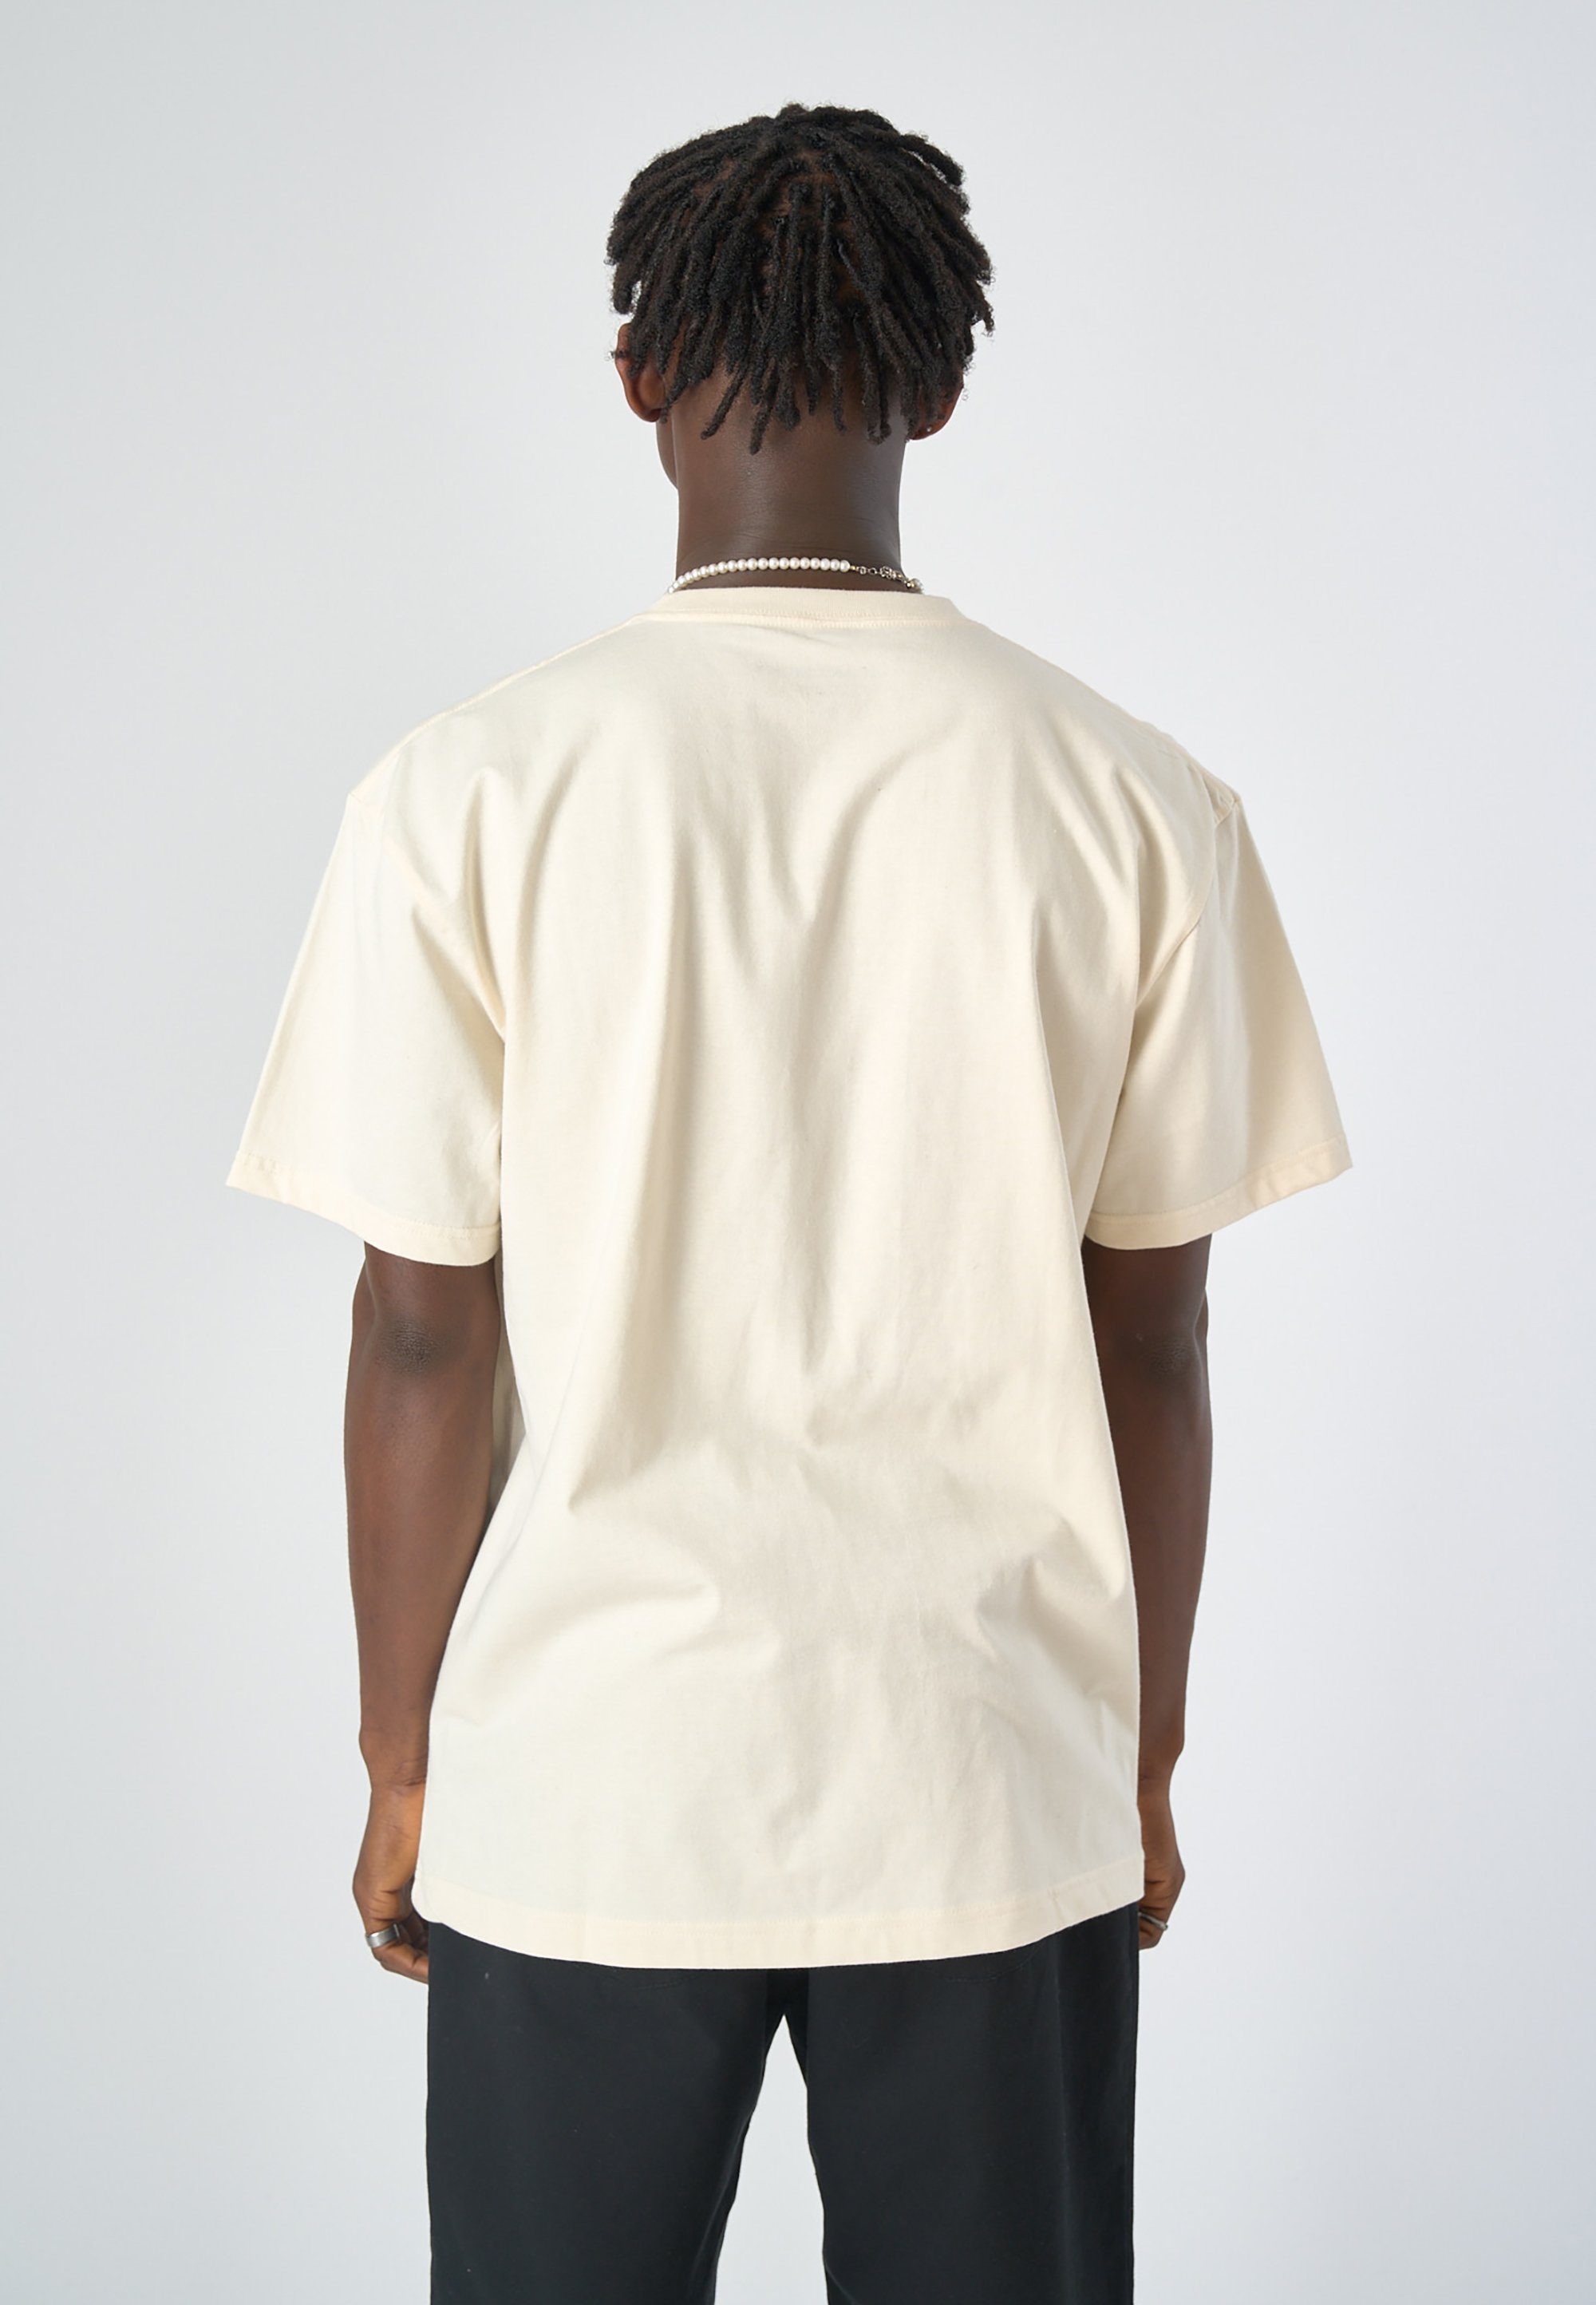 Rückenprint mit großflächigem Vibes T-Shirt Cleptomanicx Good